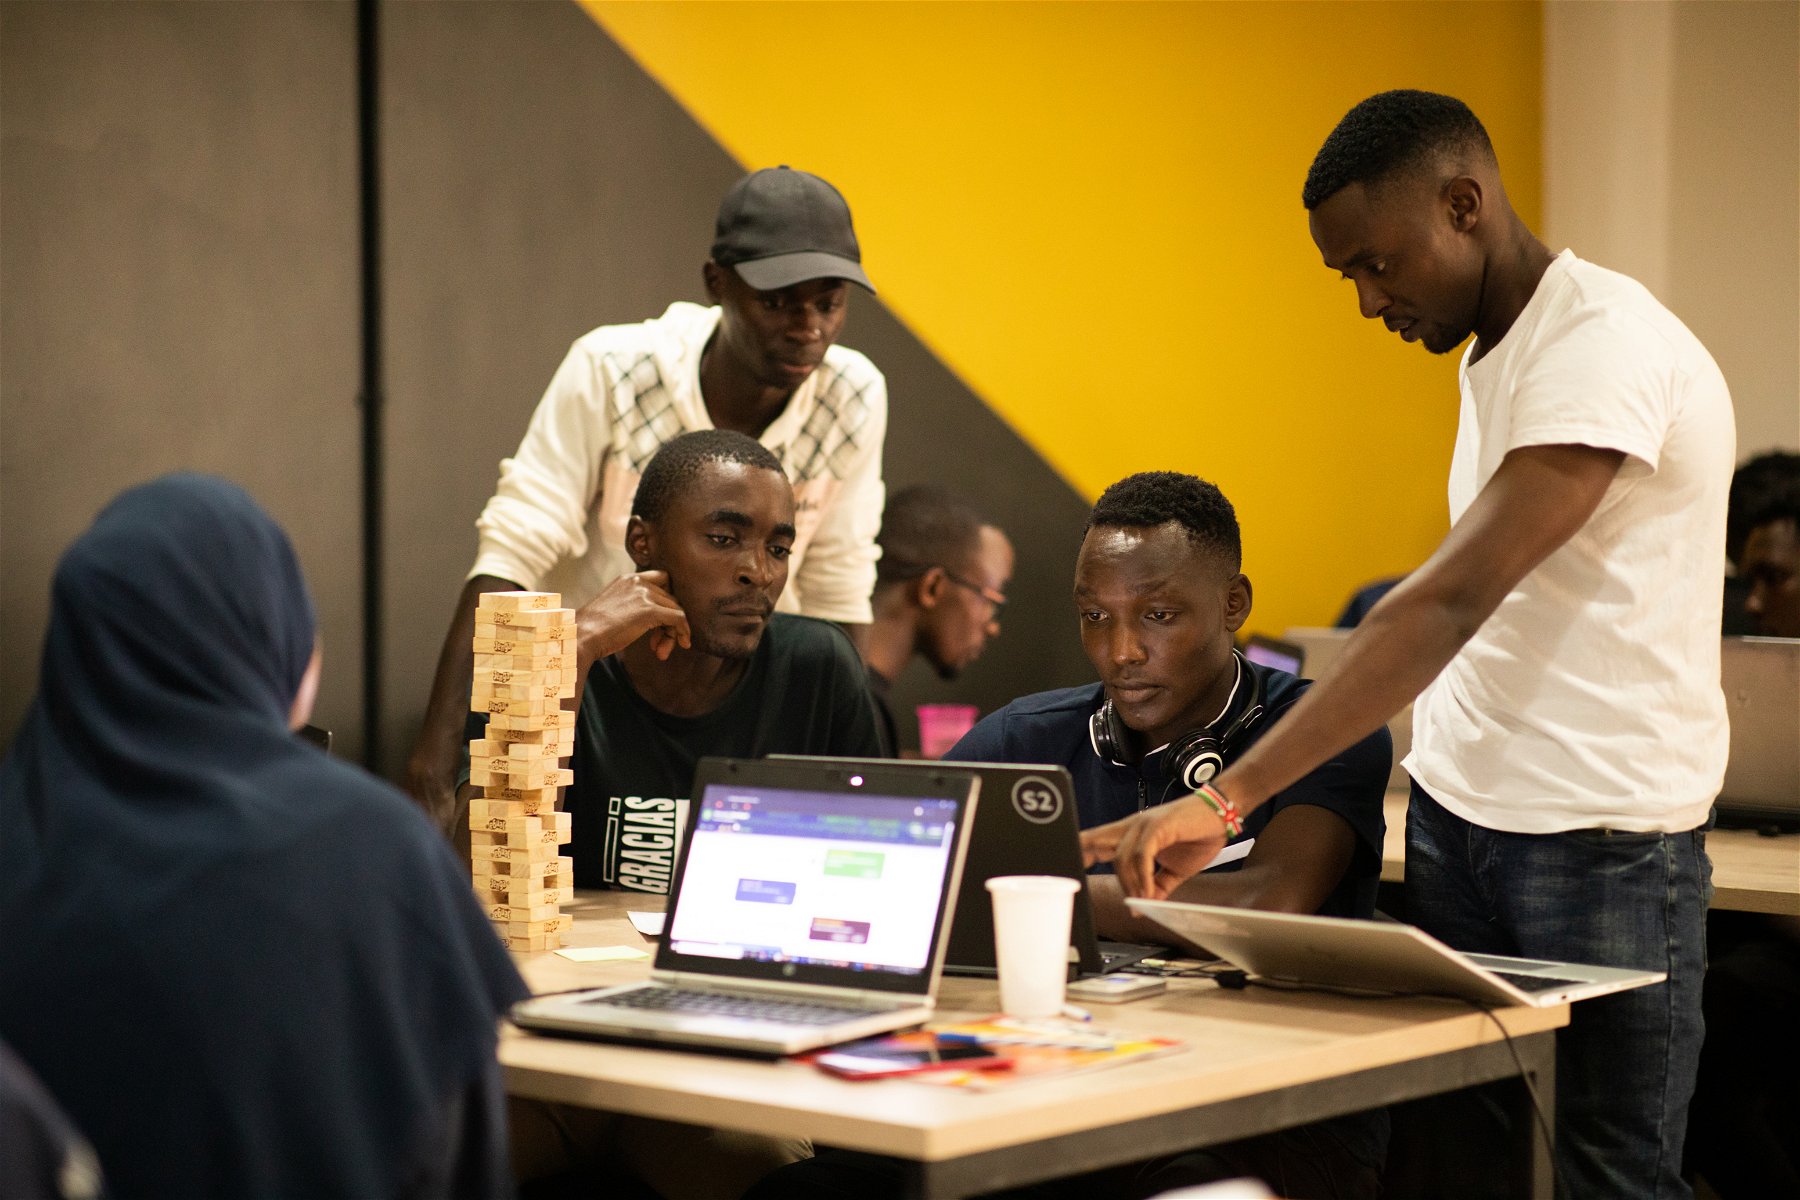 Bilde av fire menn som samarbeidar ved ein laptop. Dei er ein del av prosjektet til Techbridge Invest, som er eit døme på korleis næringslivet bidrar til utvikling og berekraftsmåla.